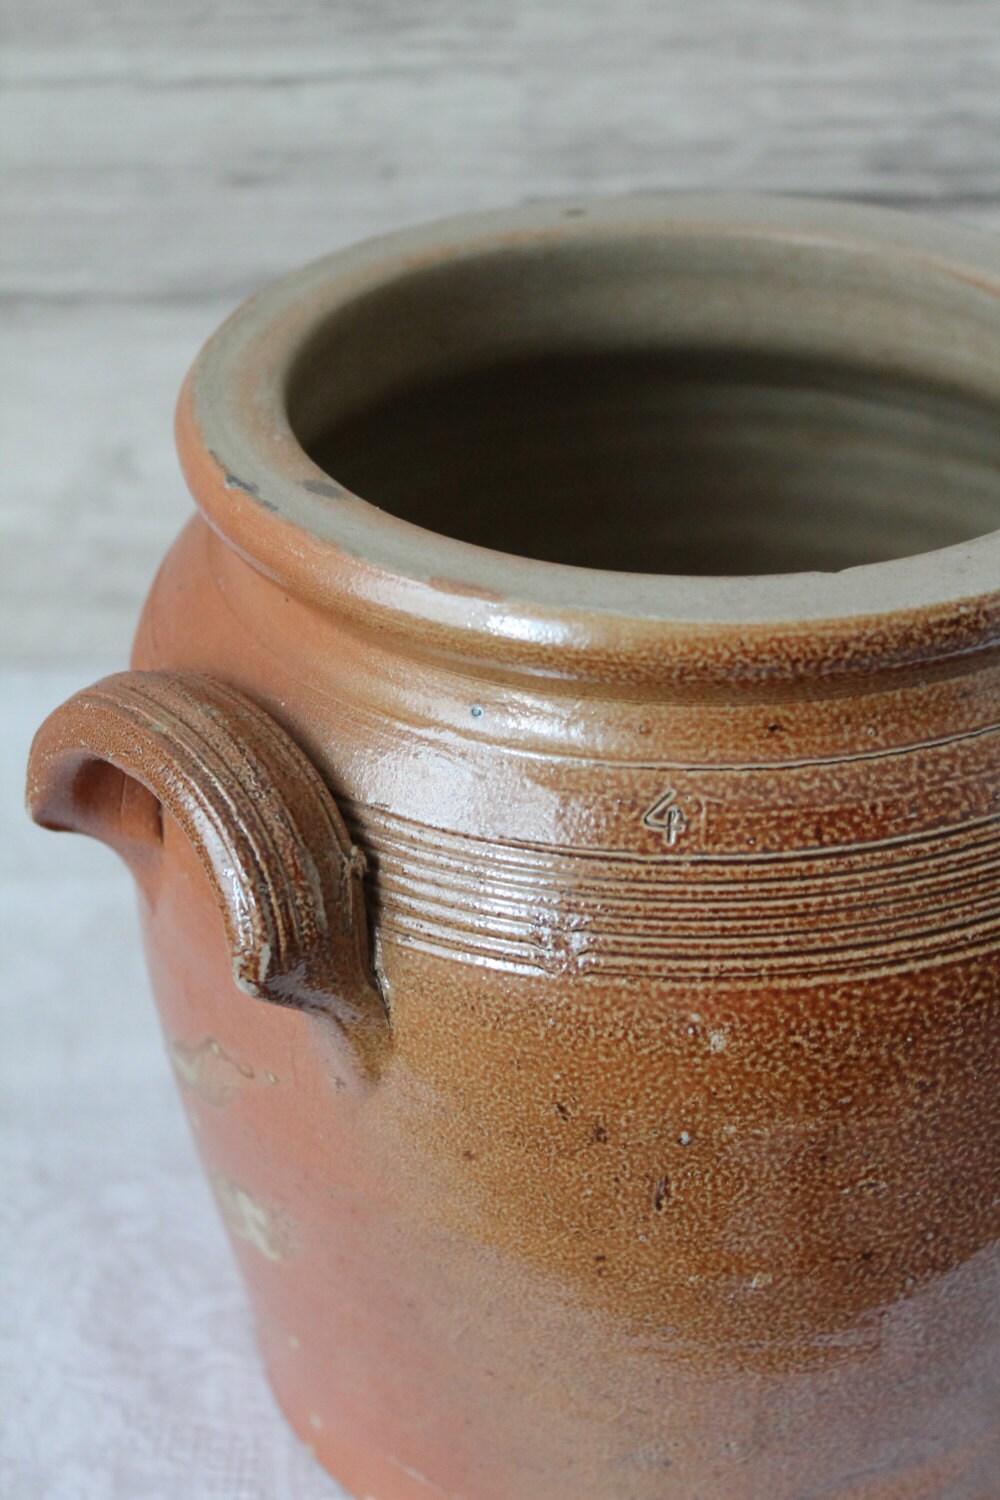 Jarre Ancienne en Grès Vernissé à Oreilles - Vers 1930 Pot Confit Décor Rustique de Cuisine Cache Po